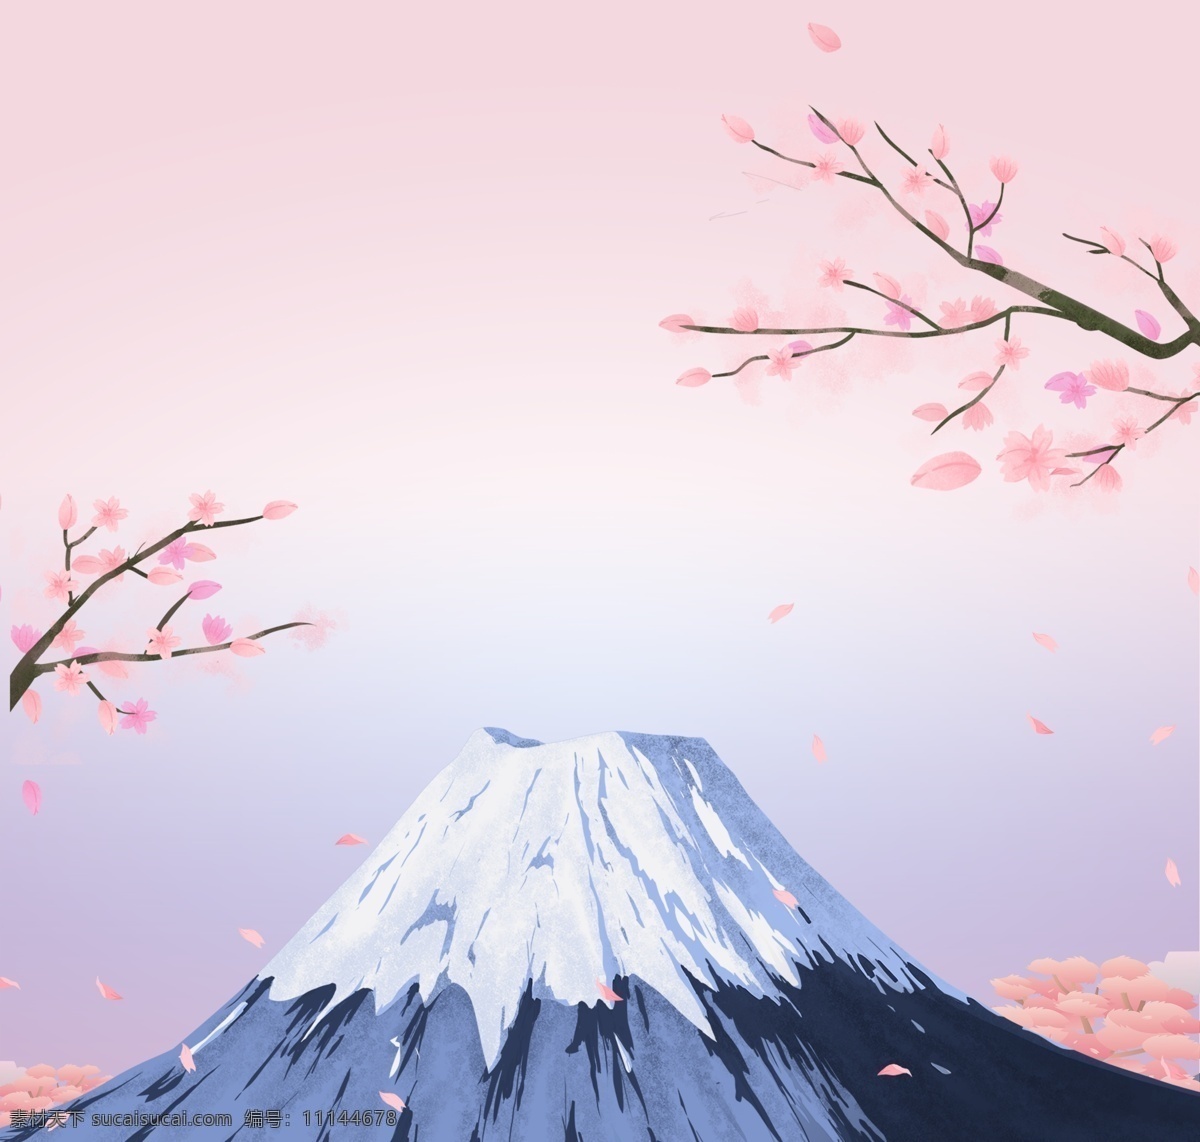 富士山图片 富士山 插画 图画 富士山水墨 水墨画 文化艺术 传统文化